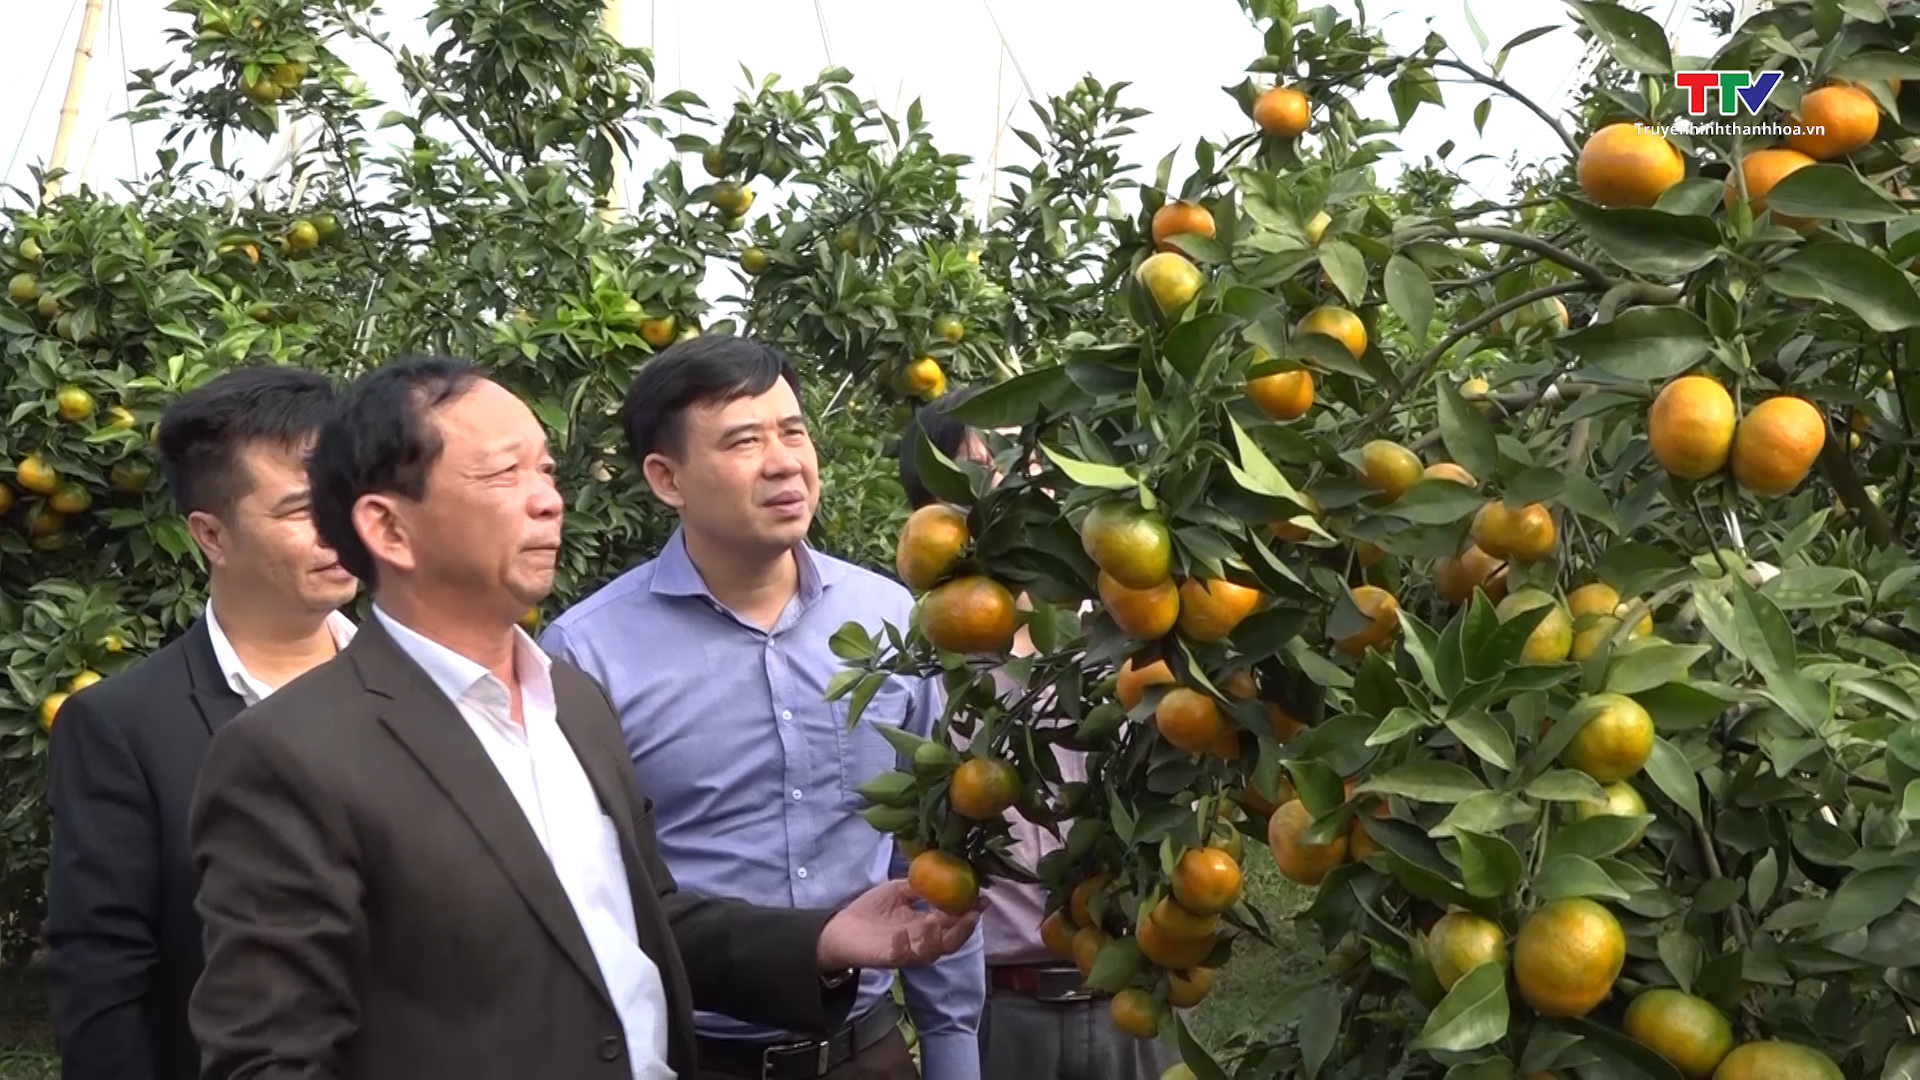 Thạch Thành phát triển các sản phẩm nông nghiệp chủ lực - Ảnh 2.